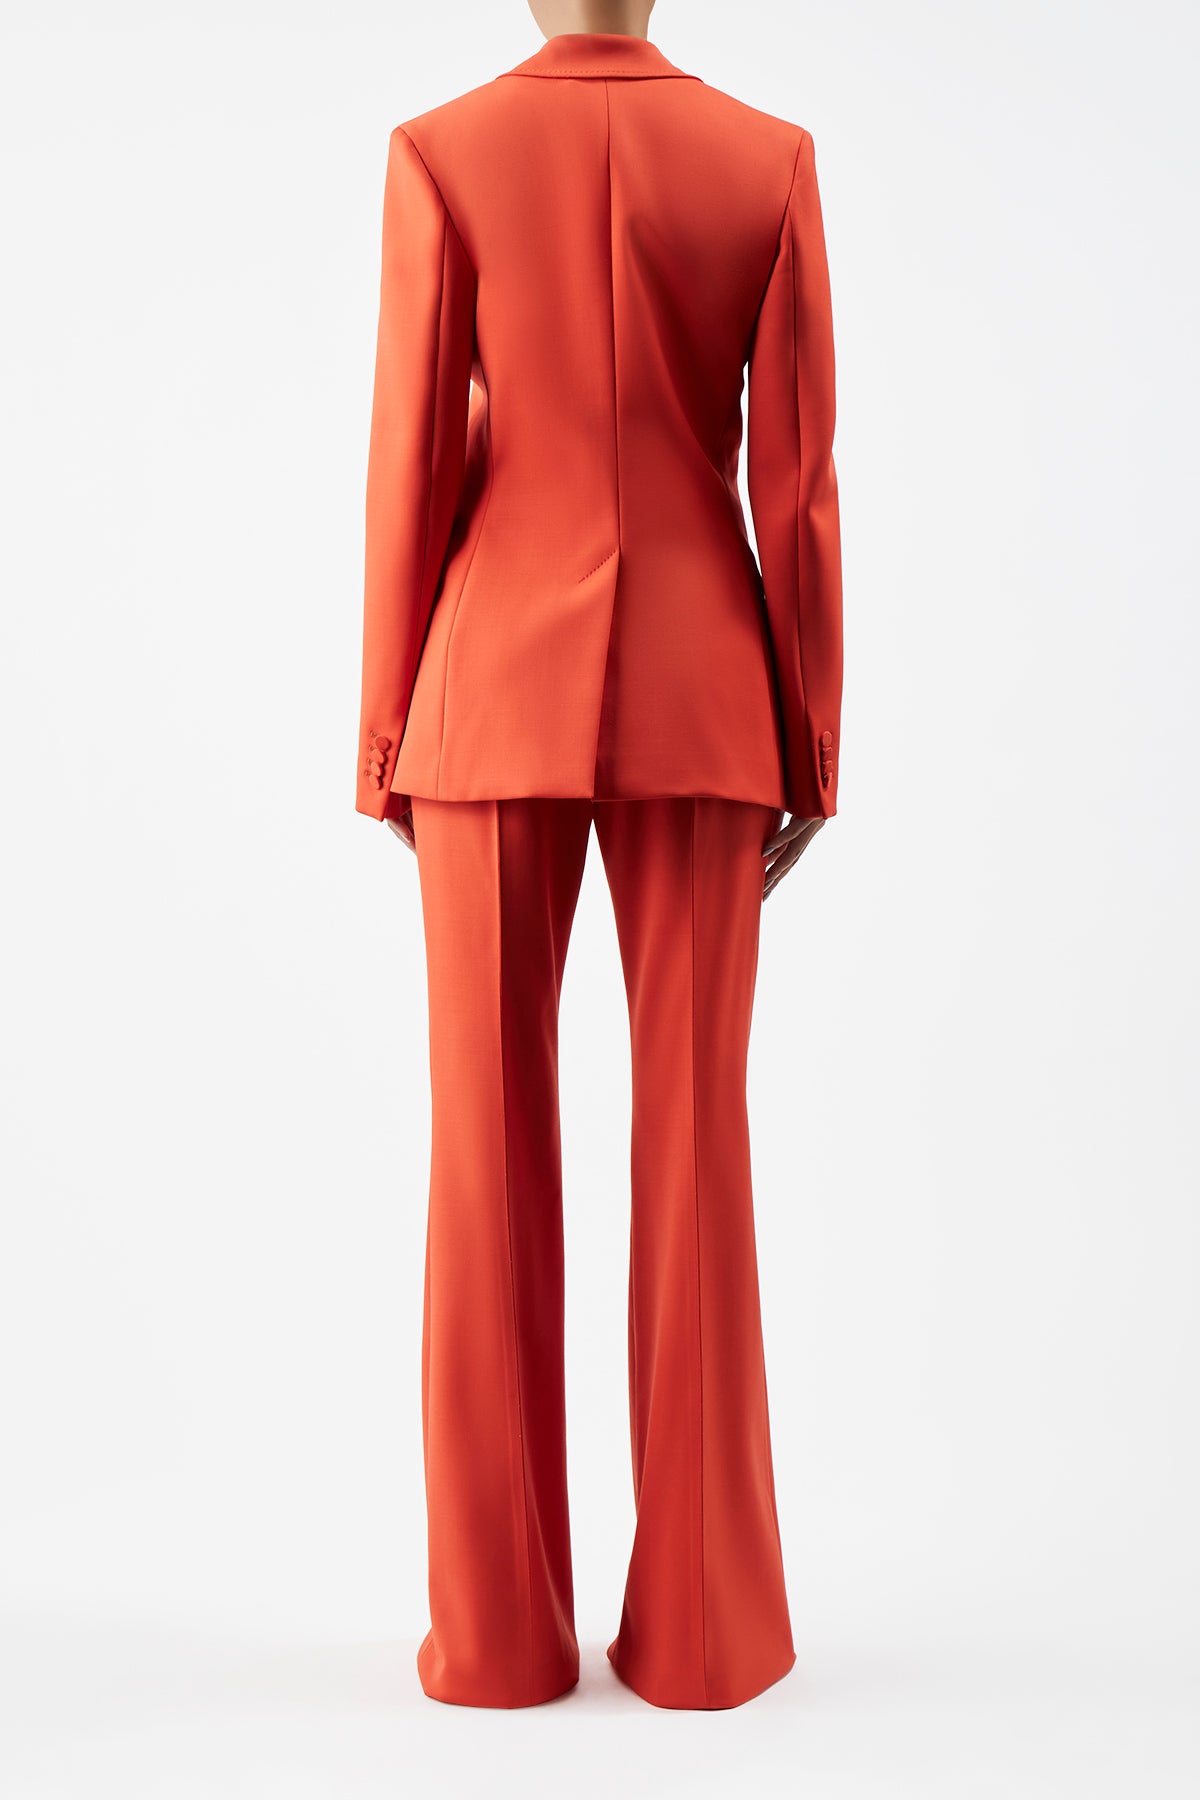 Leiva Blazer in Tonic Orange Sportswear Wool